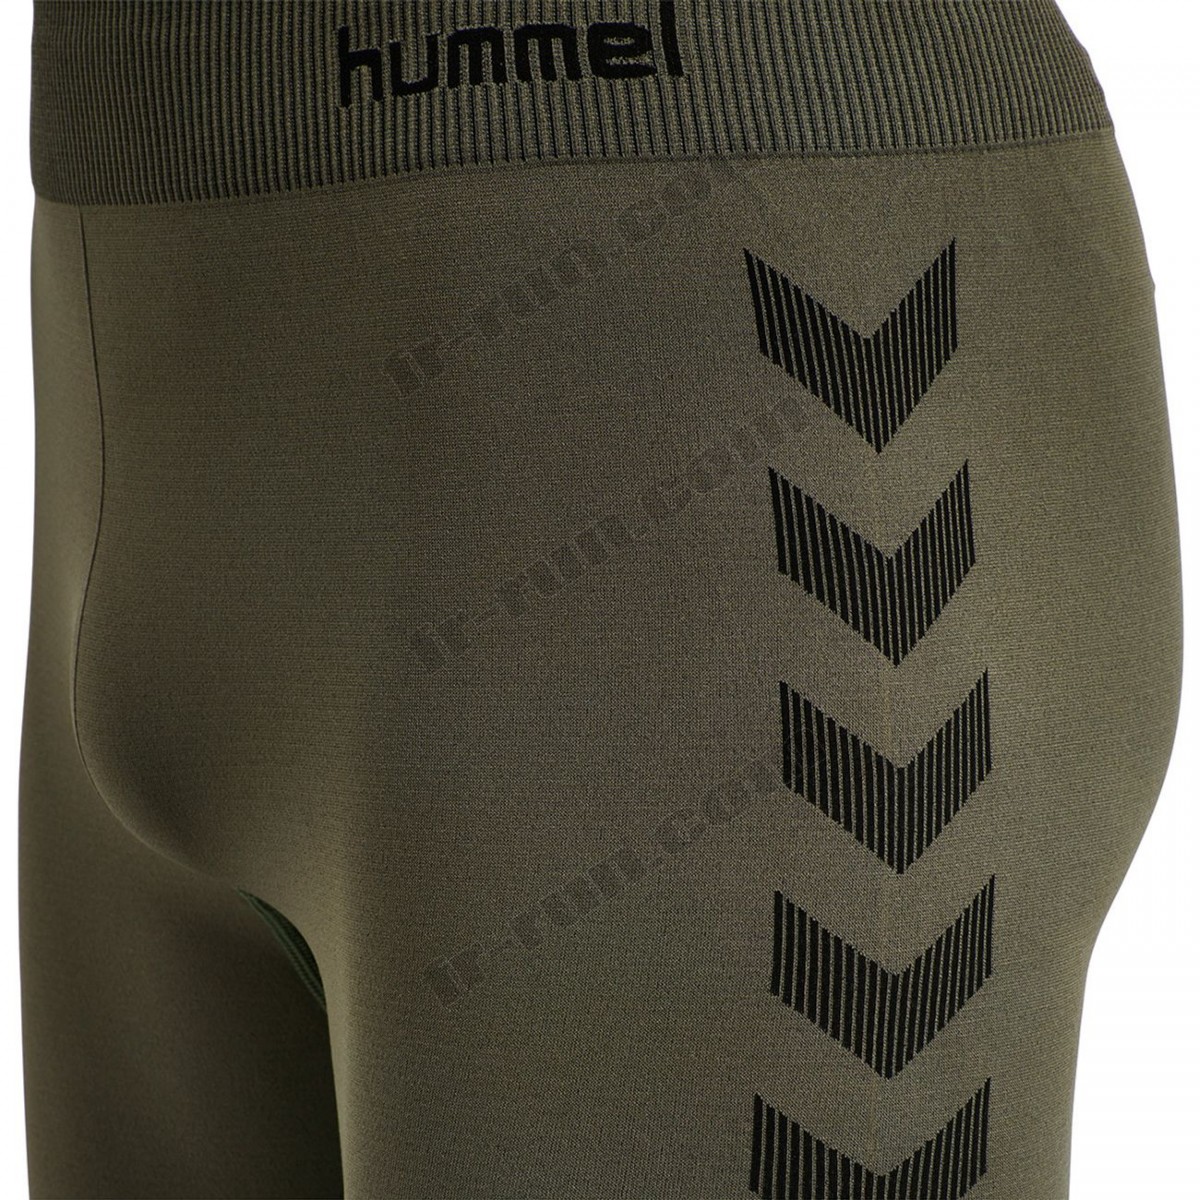 Hummel/Fitness homme HUMMEL Short de compression Hummel hmlfirst training √ Nouveau style √ Soldes - -8